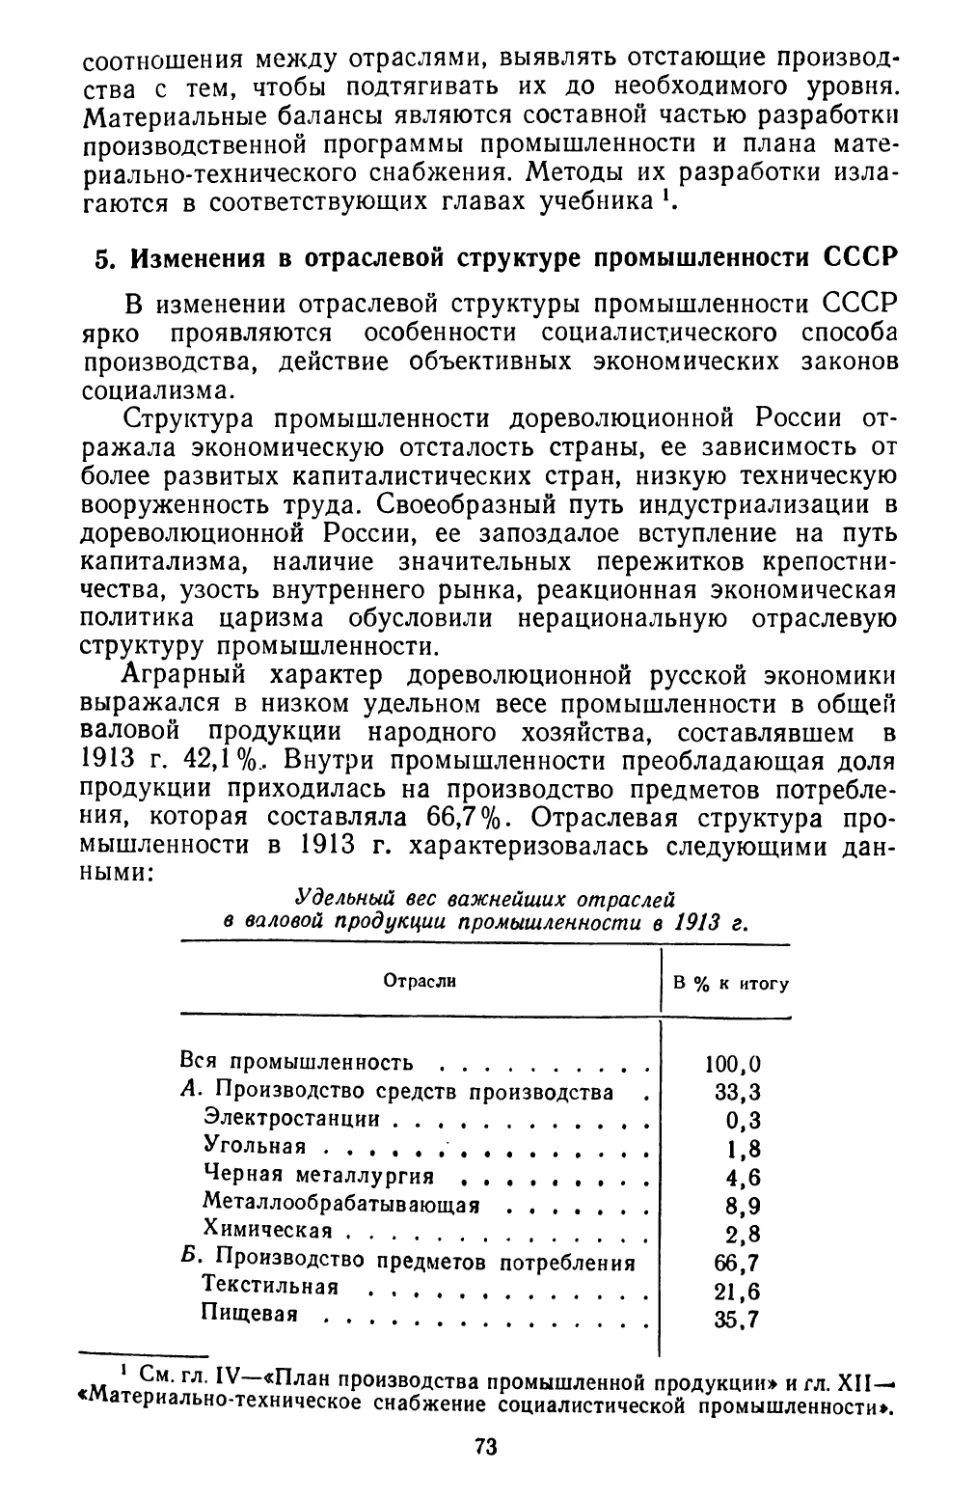 5. Изменения в отраслевой структуре промышленности СССР